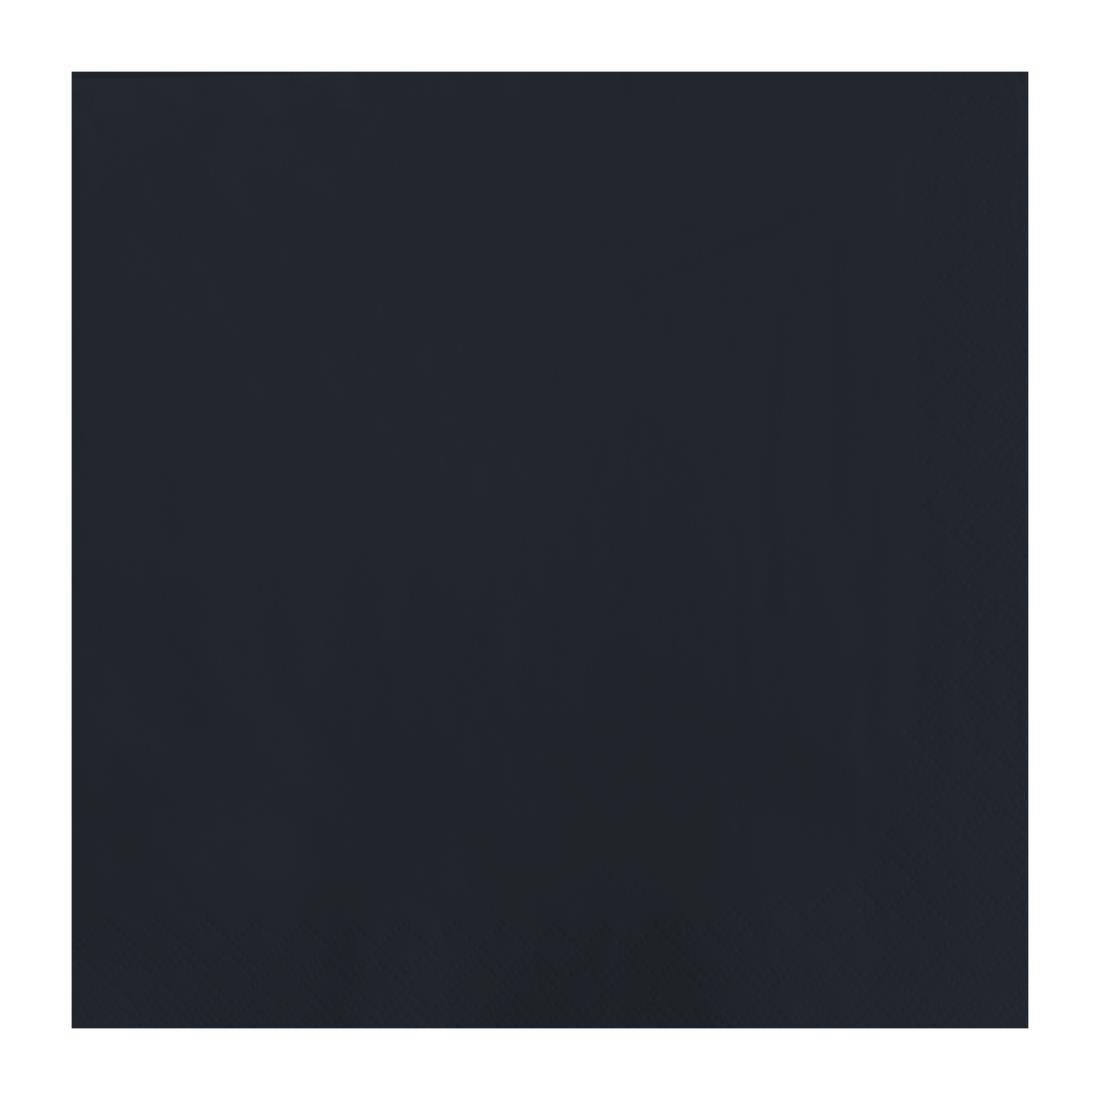 Fasana Dinner Napkin Black 40x40cm 3ply 1/4 Fold (Pack of 1000) - FT326  - 1